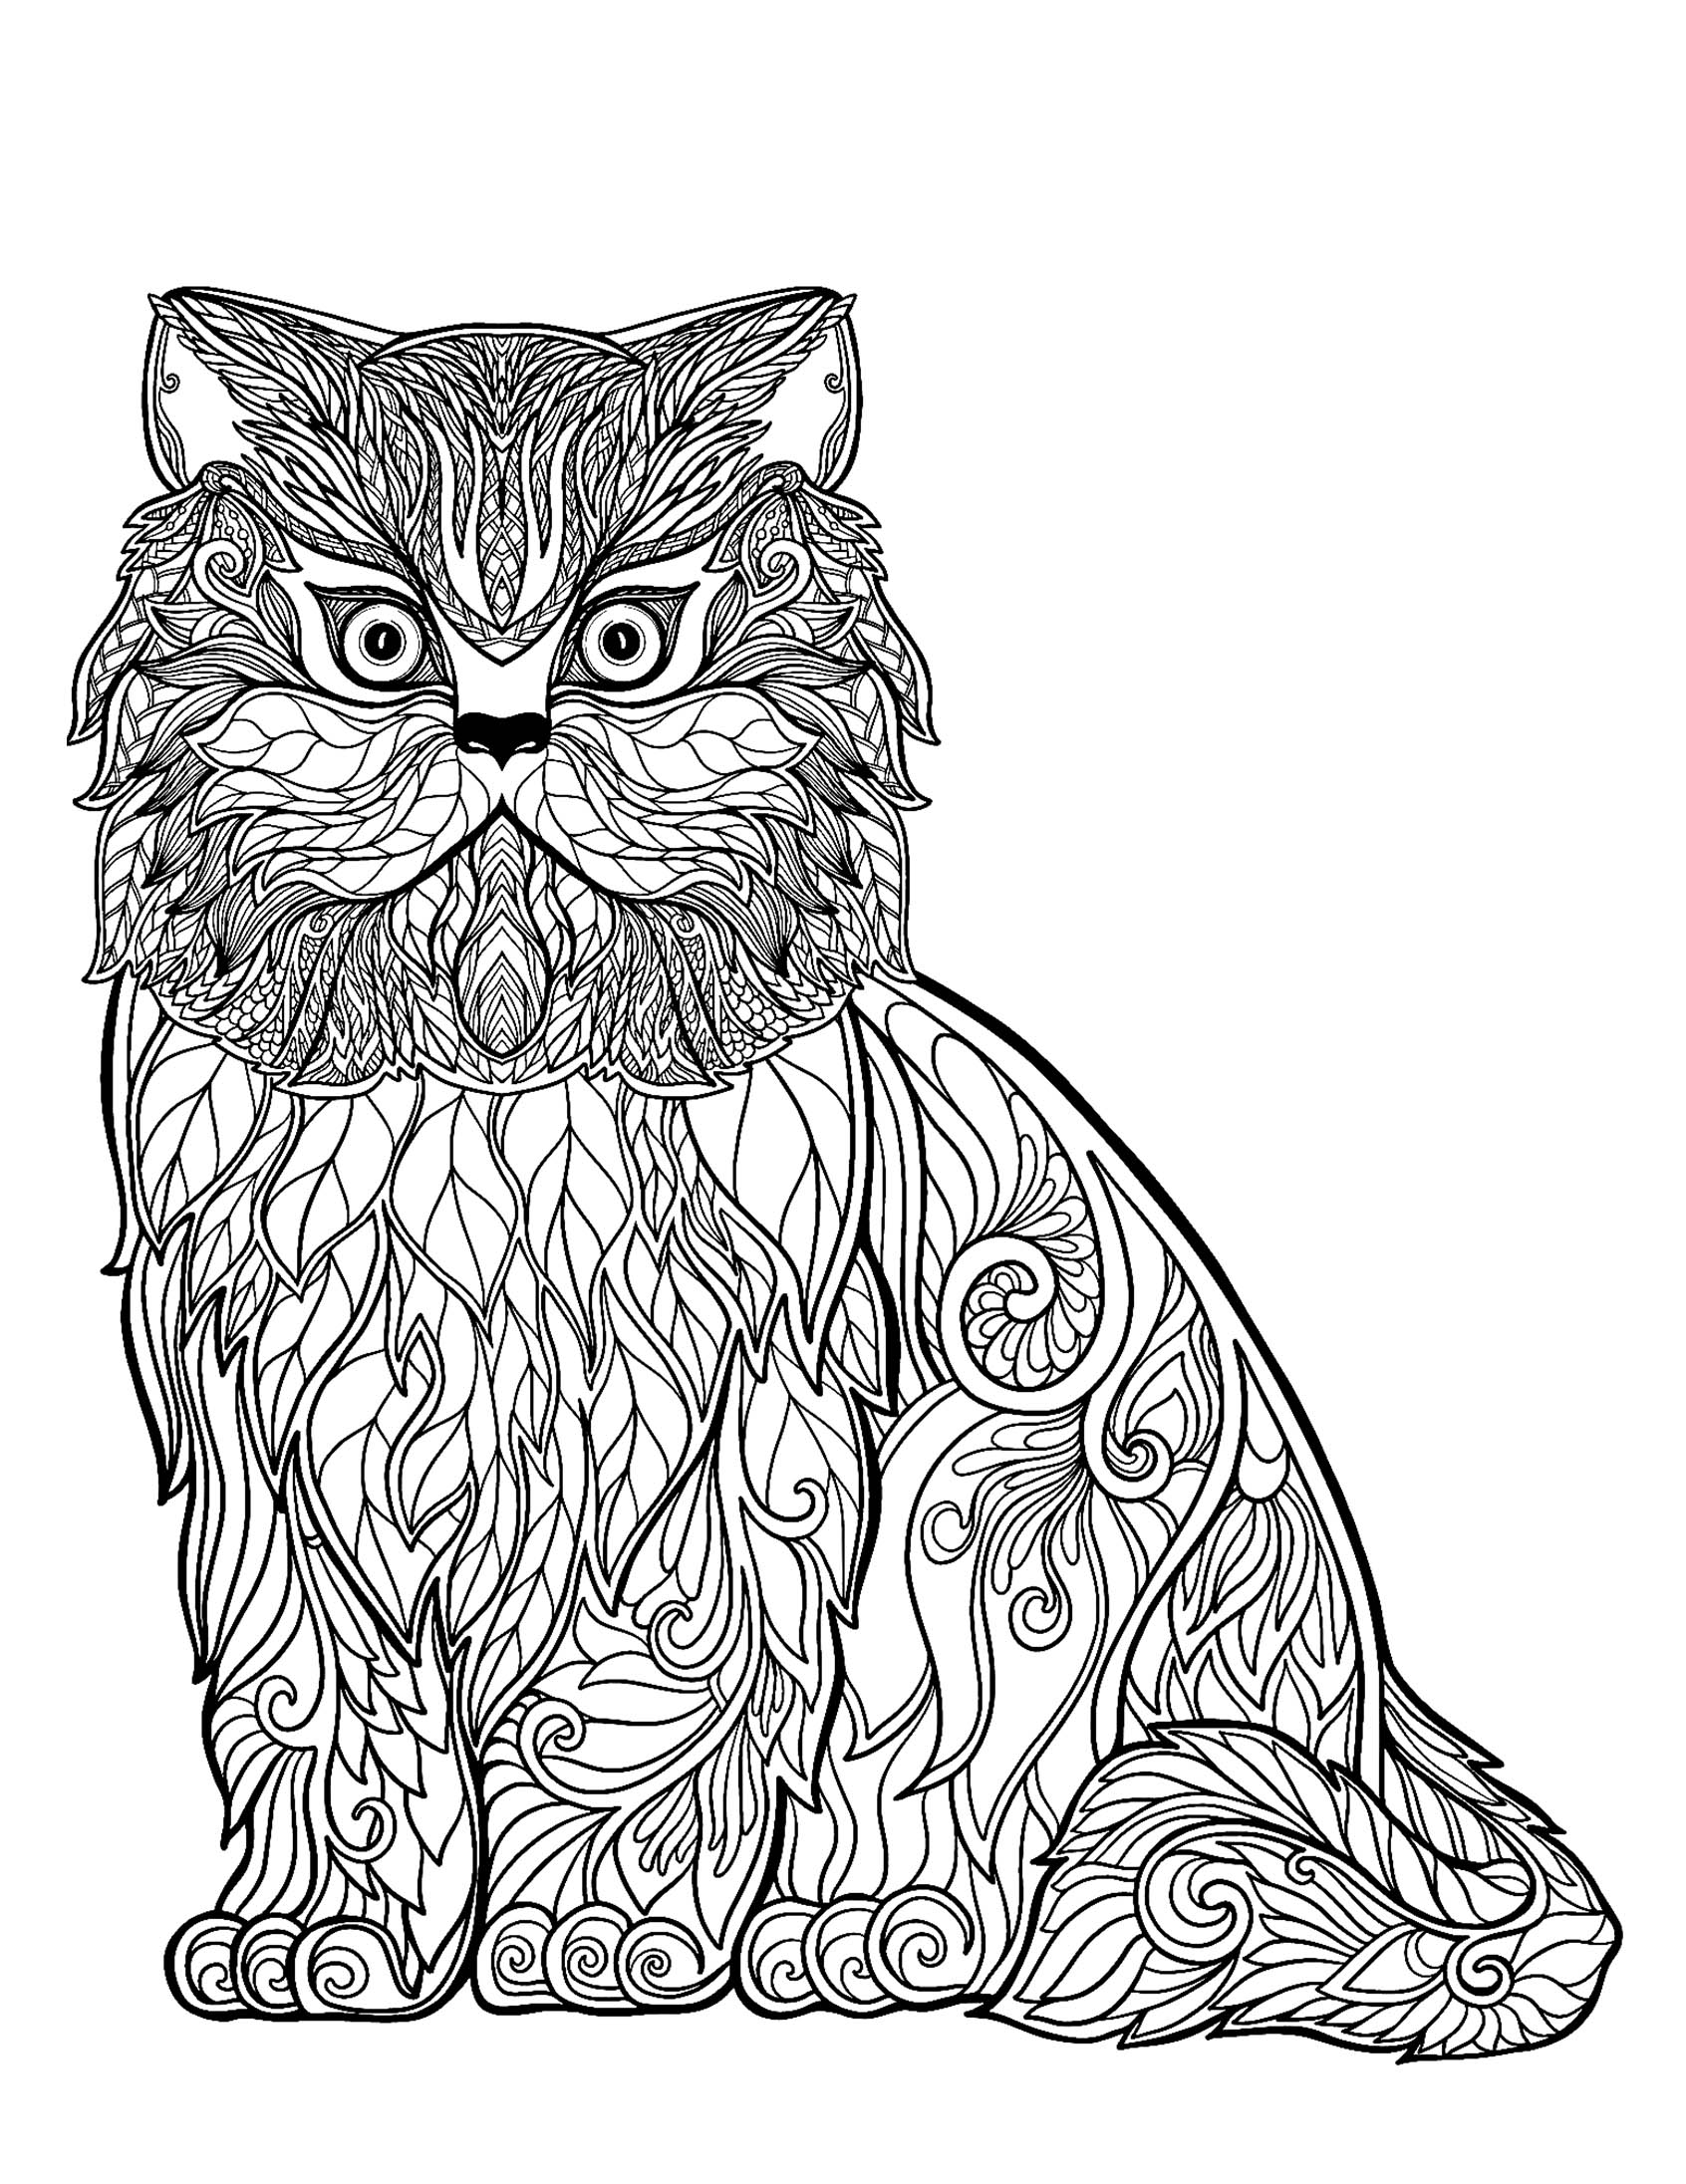 Desenho de gato legal para colorir